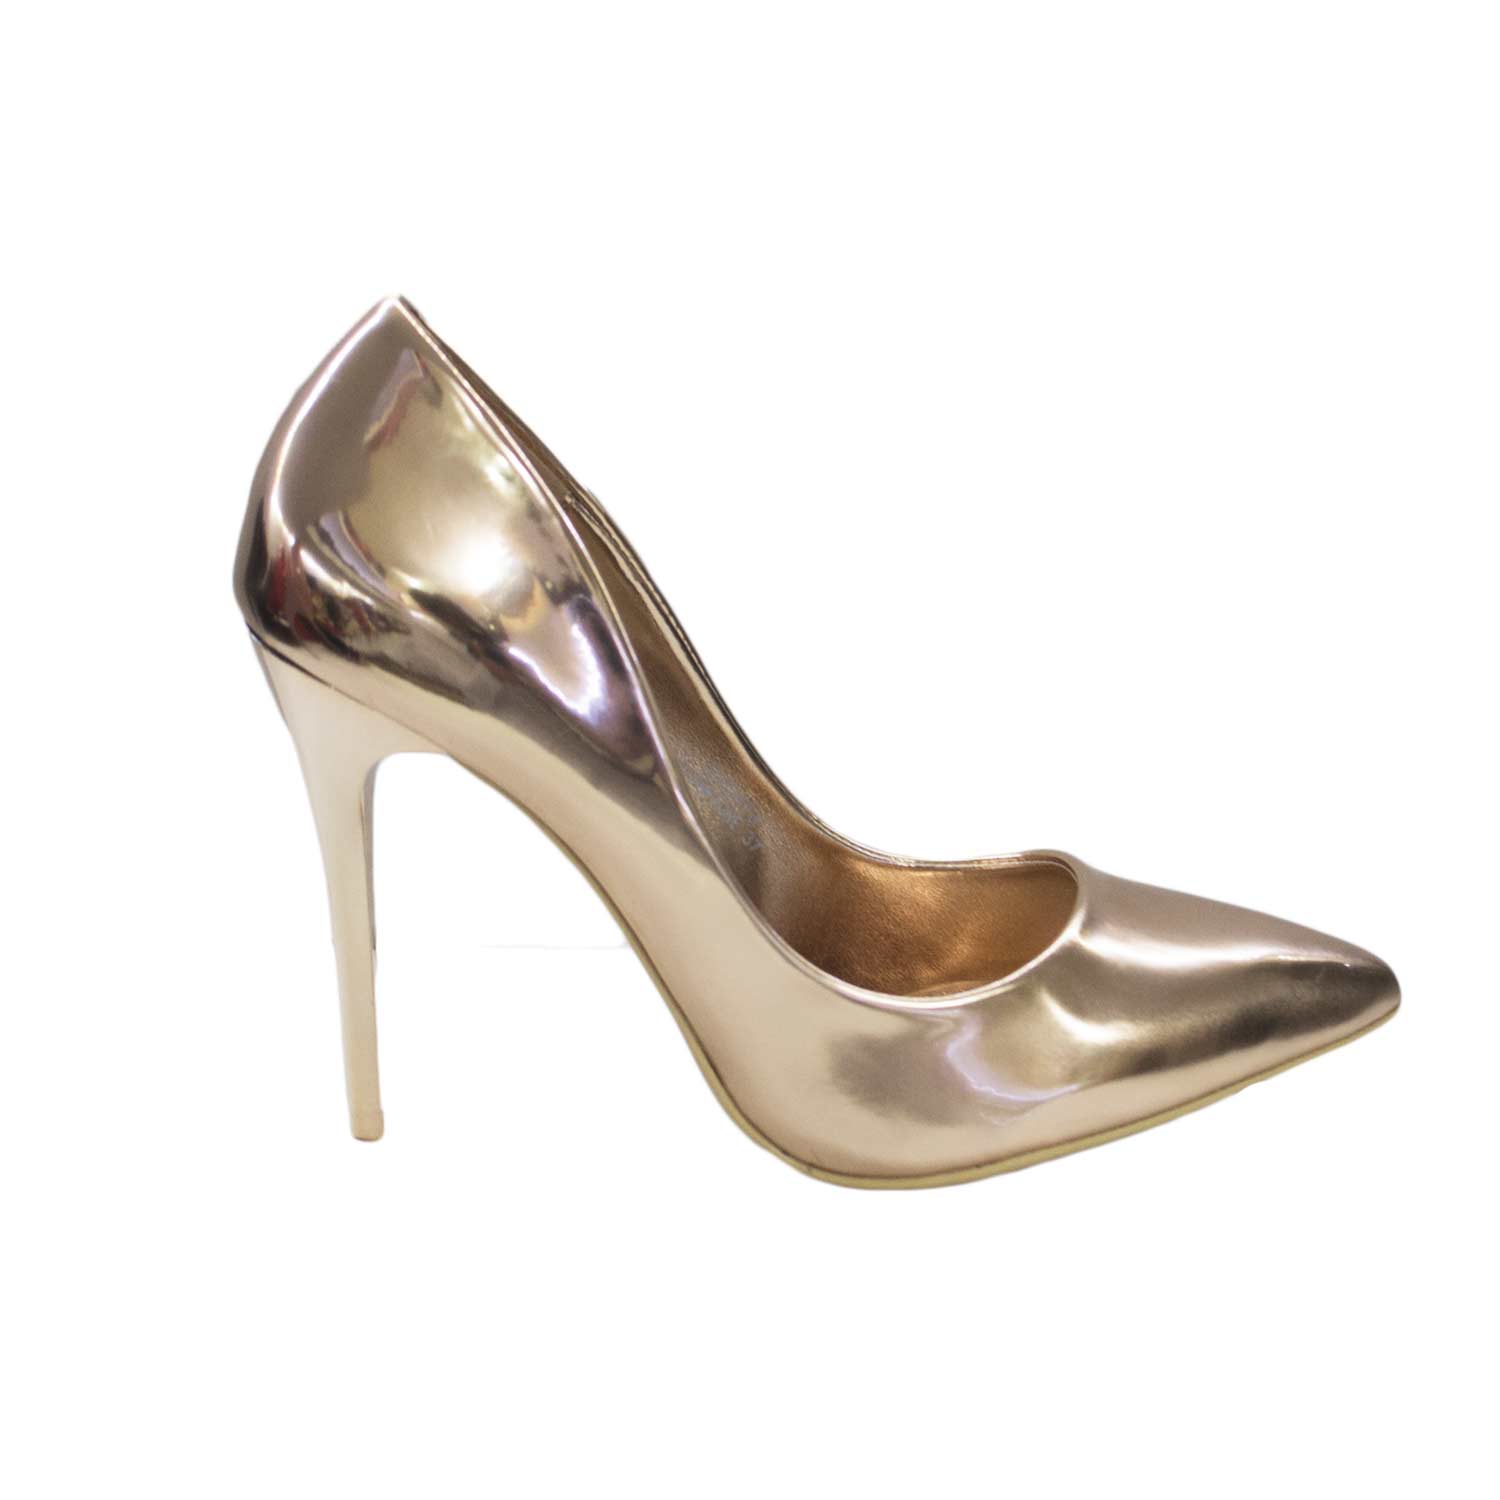 Scarpe donna alte decollete bronzo laminato tacco moda chic glamour donna  d�collet� Malu Shoes | MaluShoes